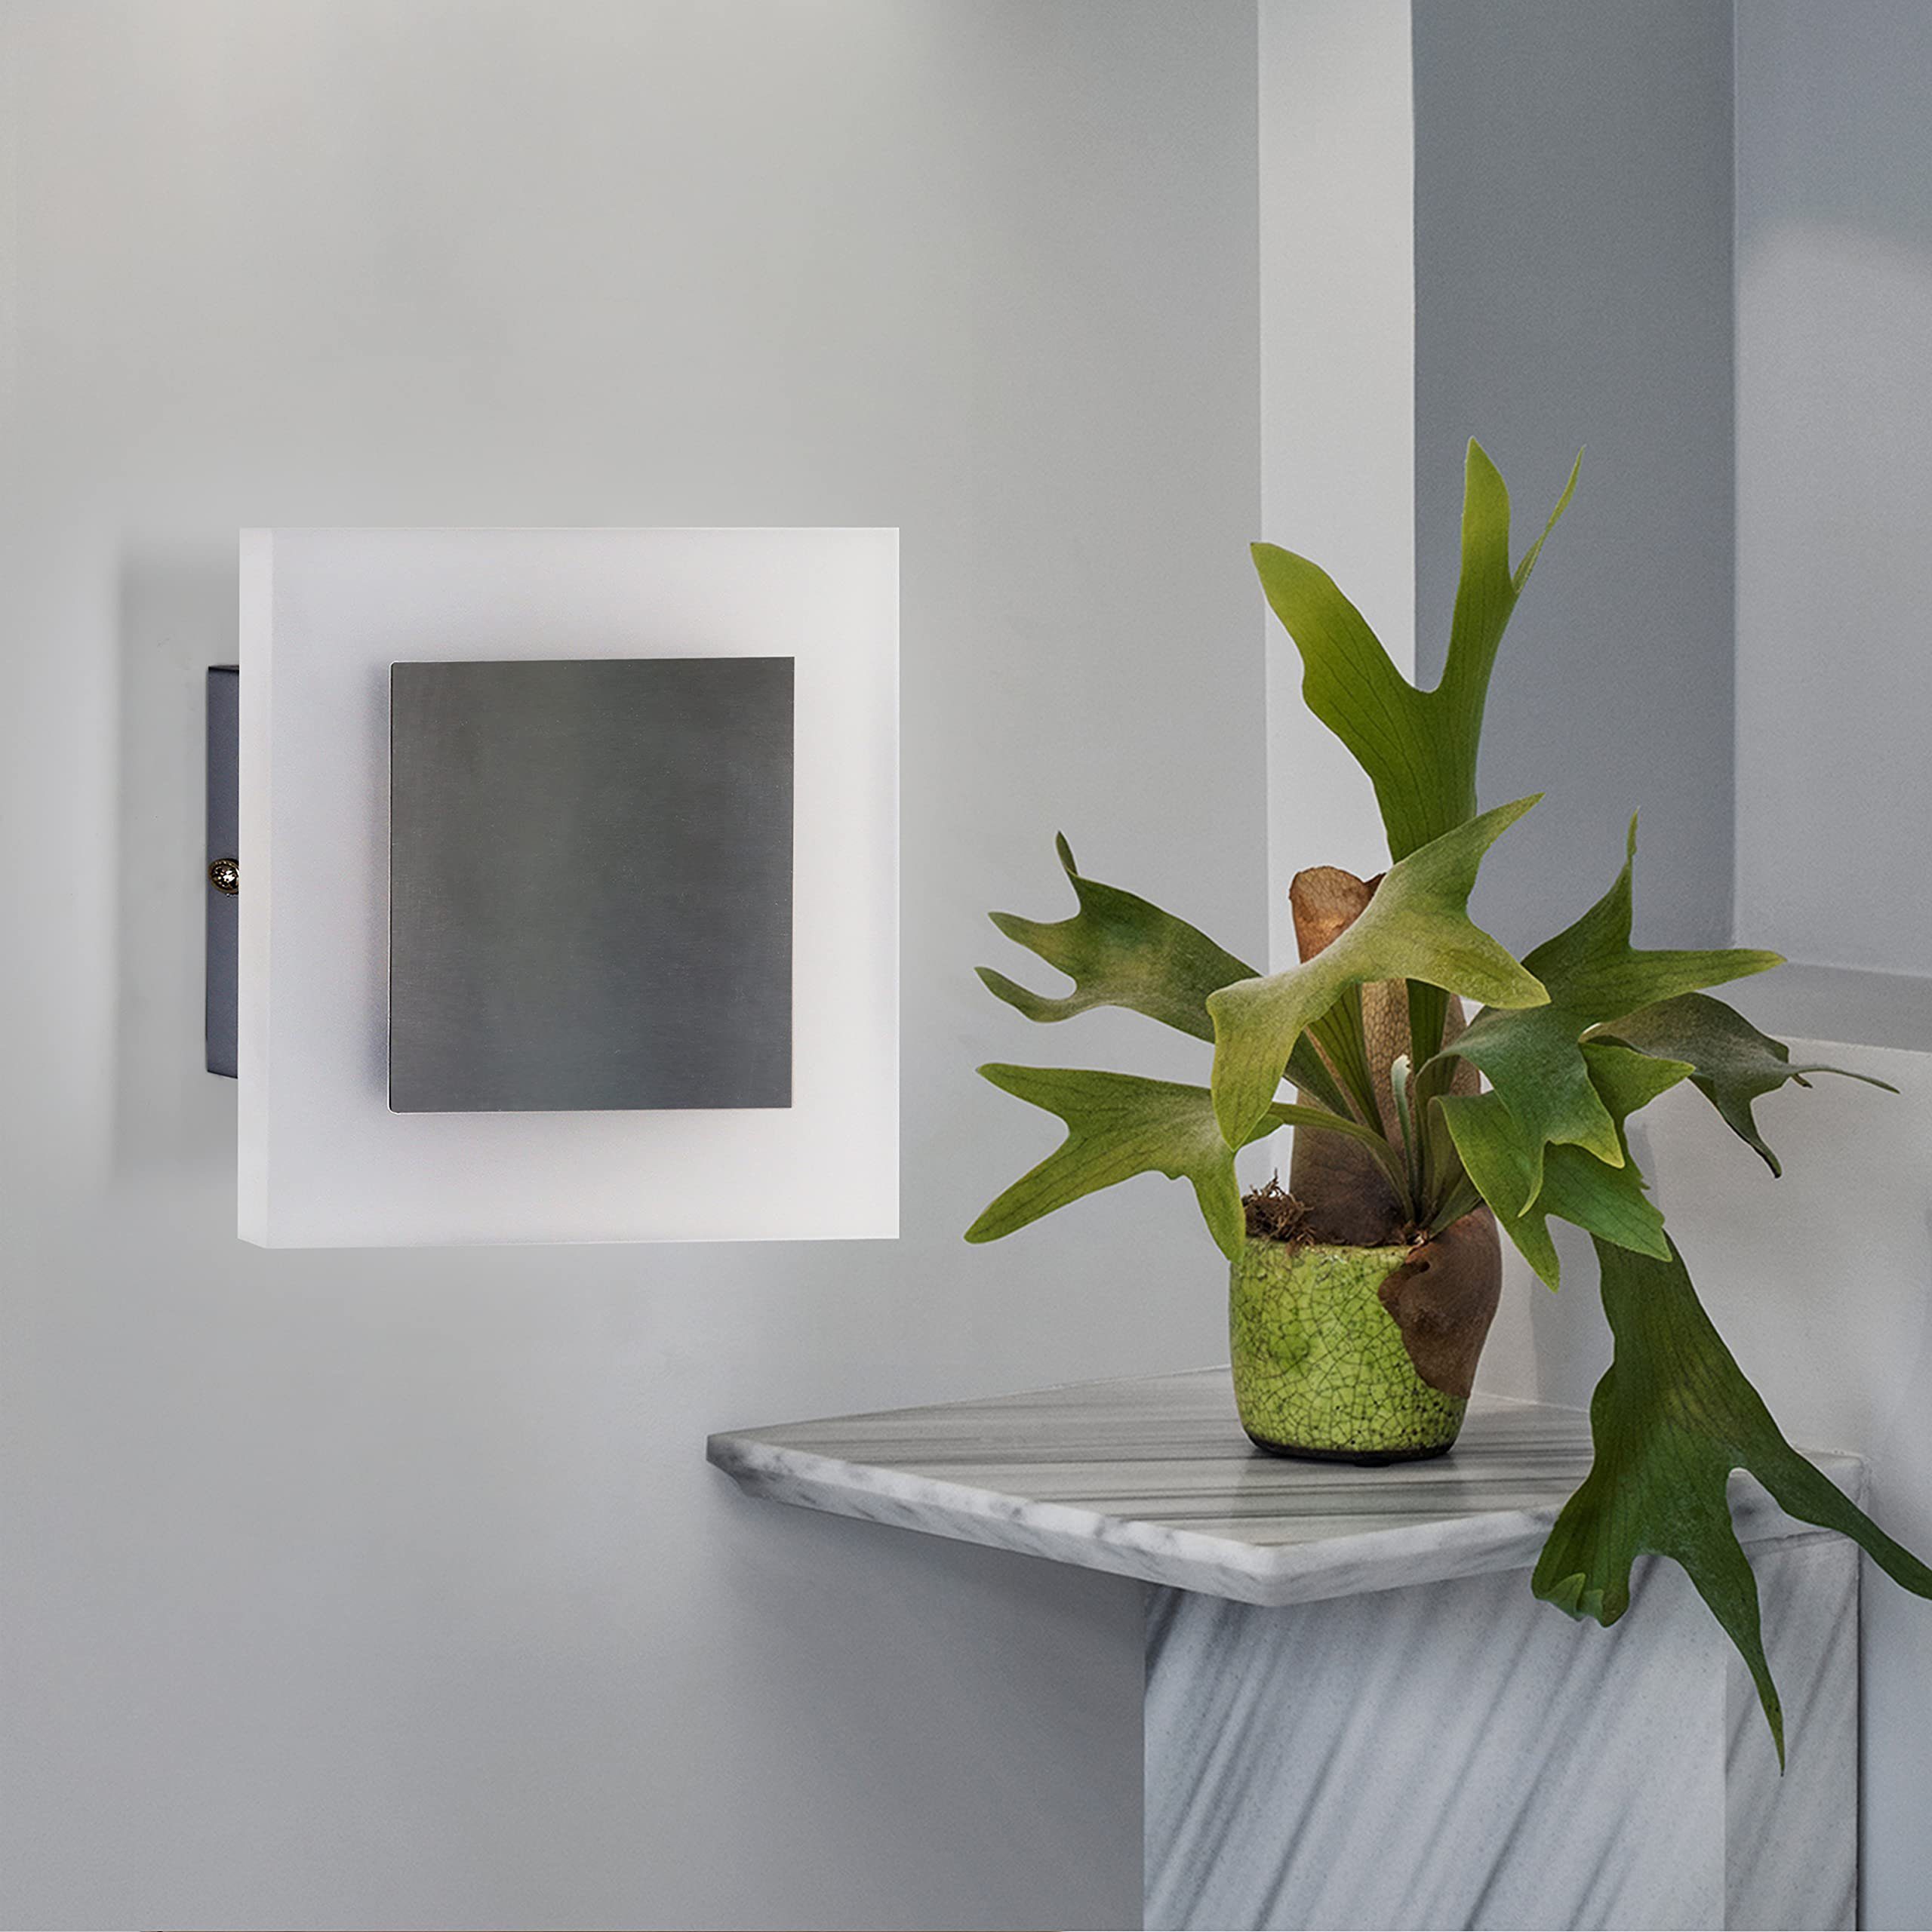 ZMH LED Beleuchtung, Wandleuchte integriert Quadrat innen LED Wandleuchte fest Wand modern Flur